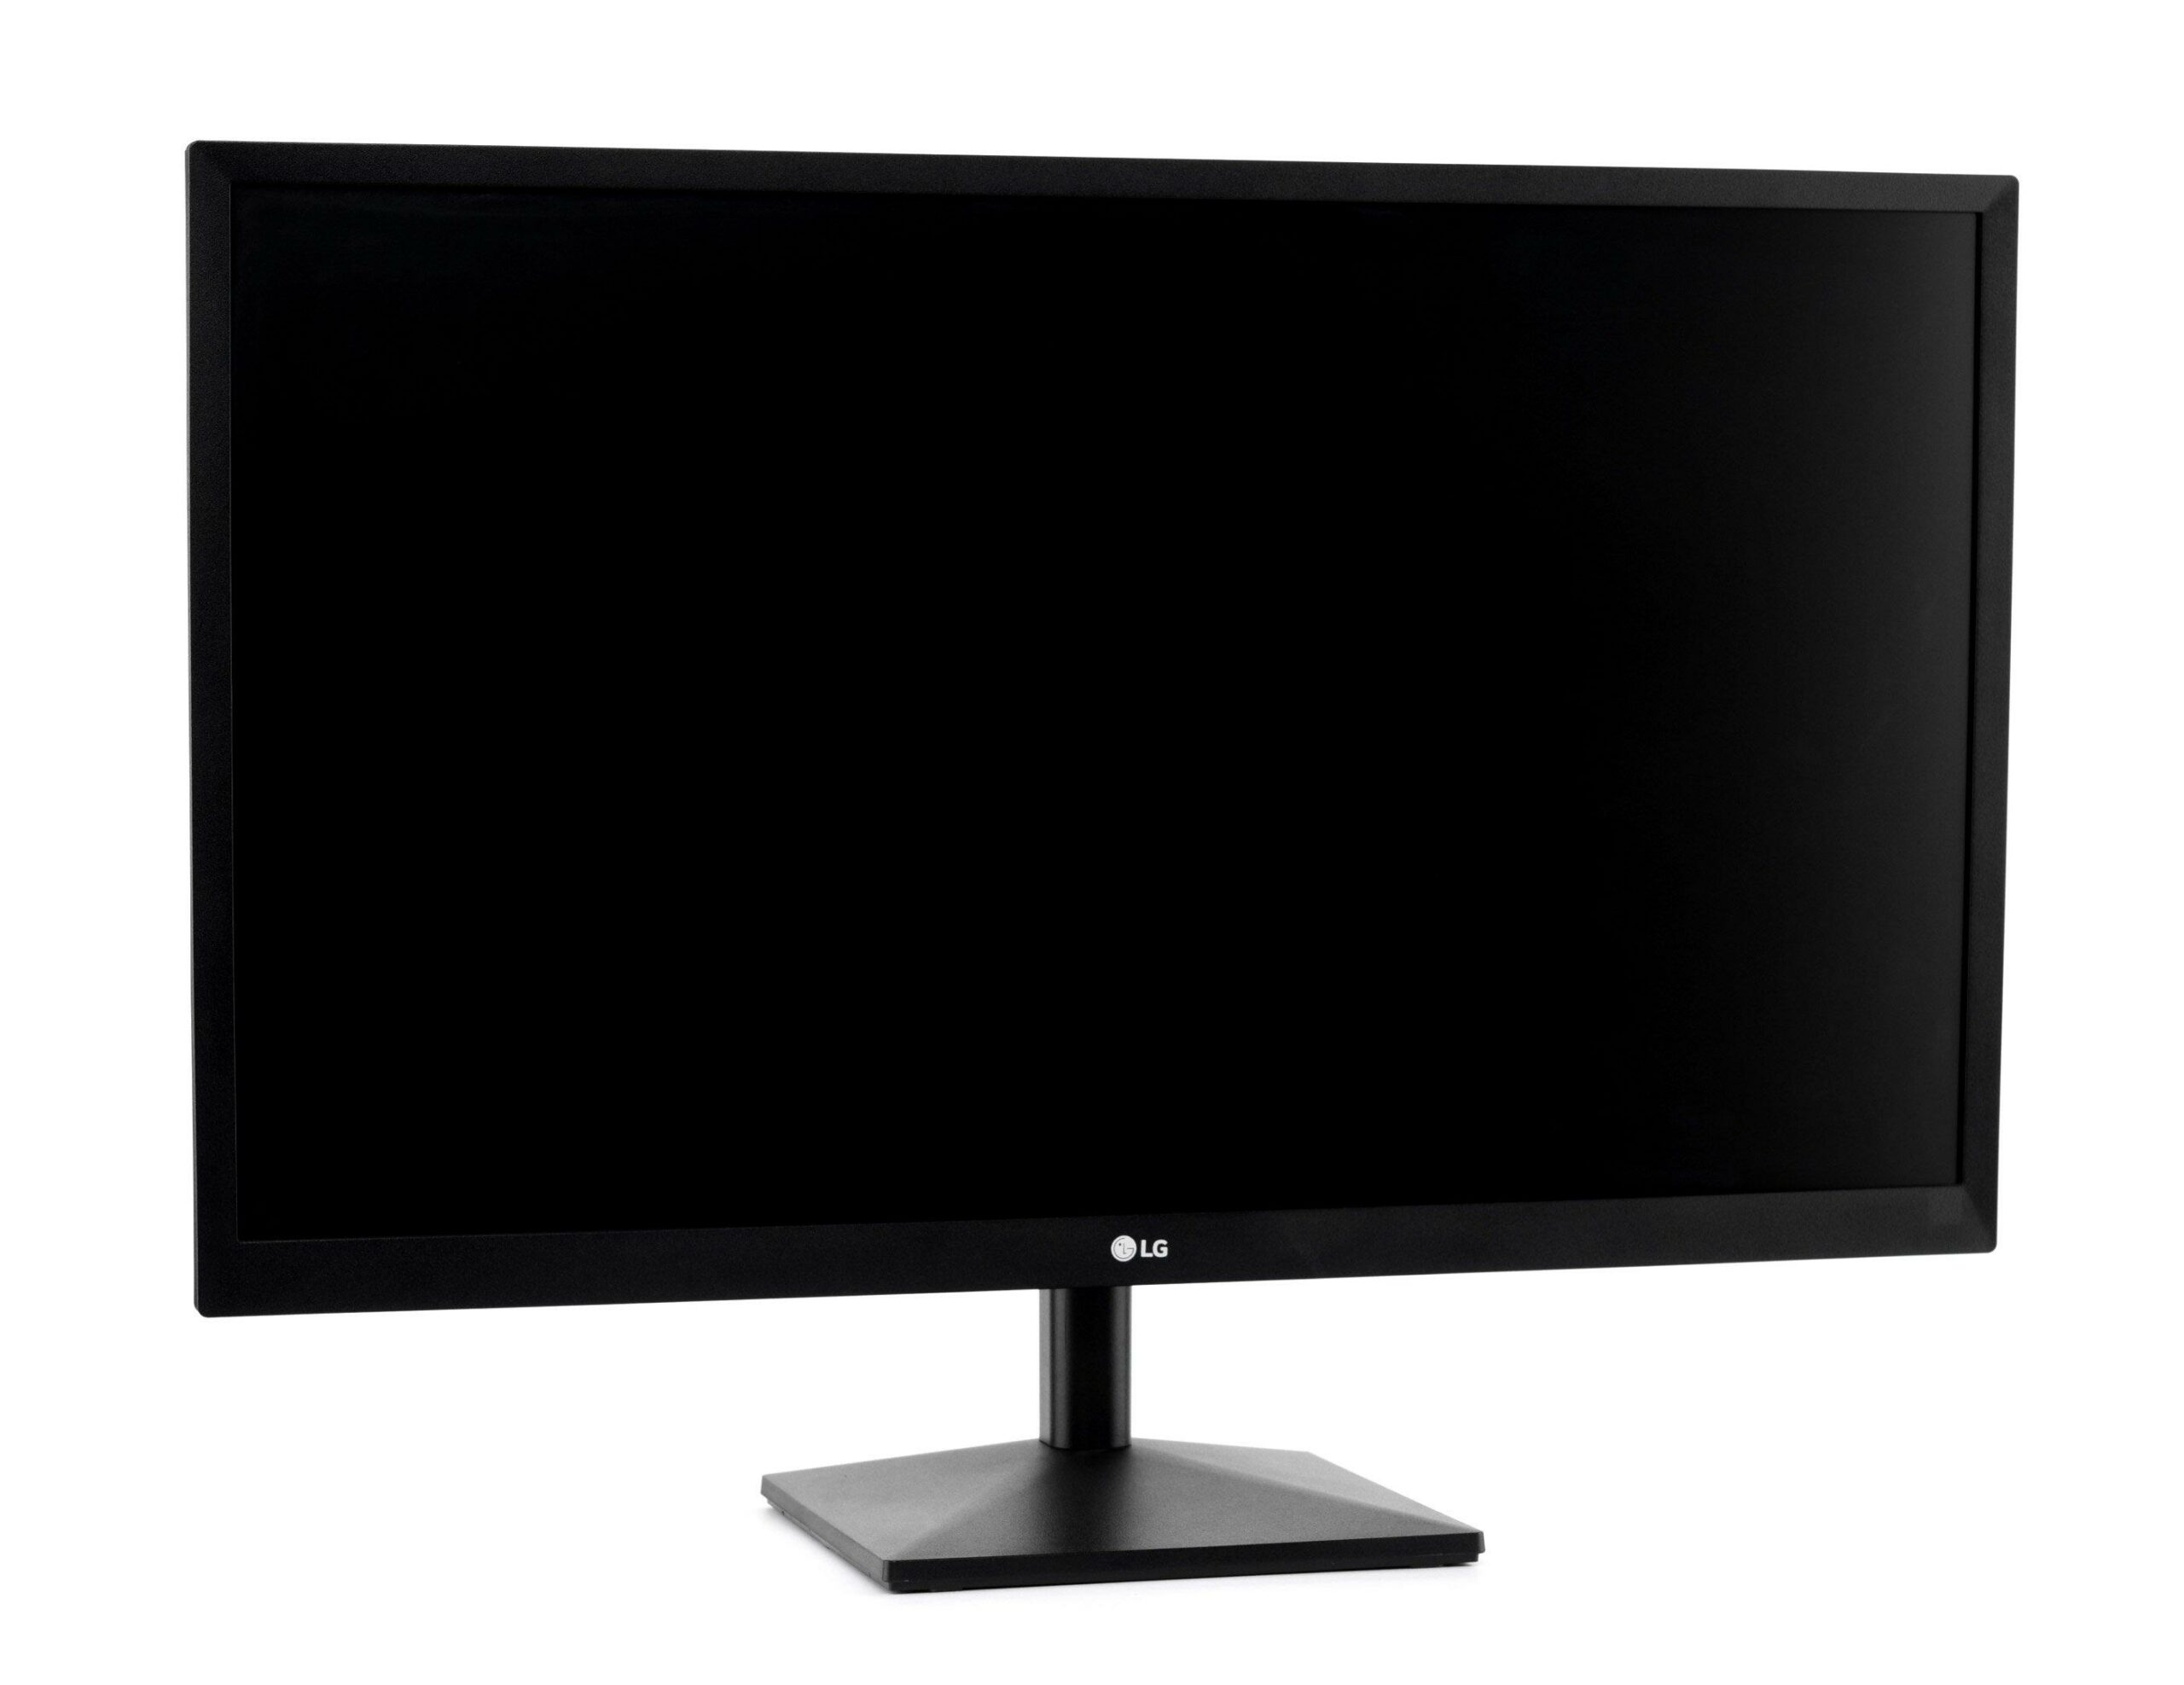 LG 27 inch Monitor FHD Black scaled